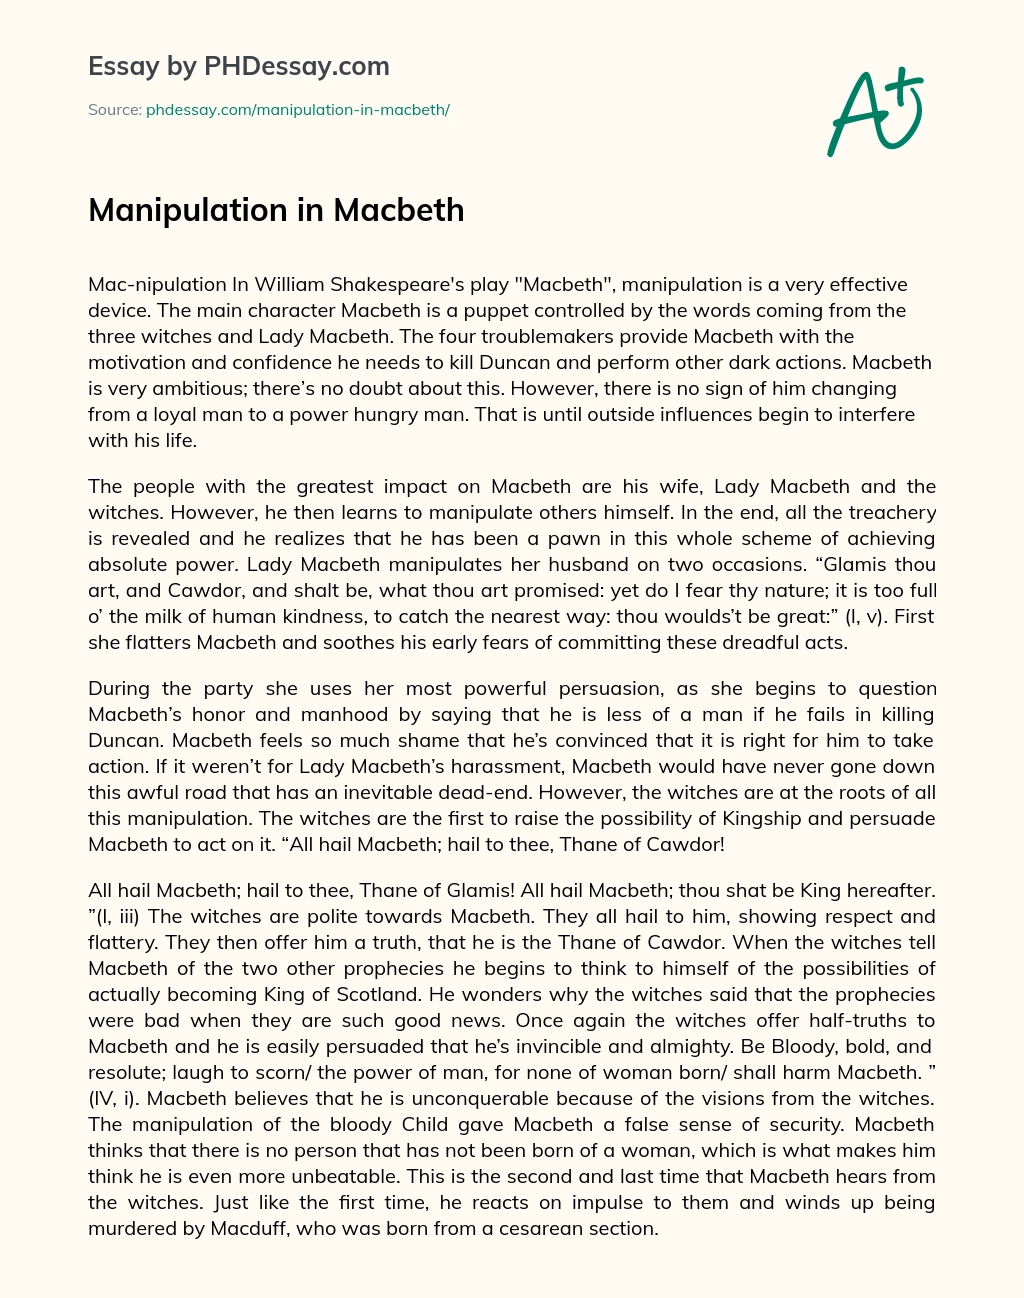 Manipulation in Macbeth essay